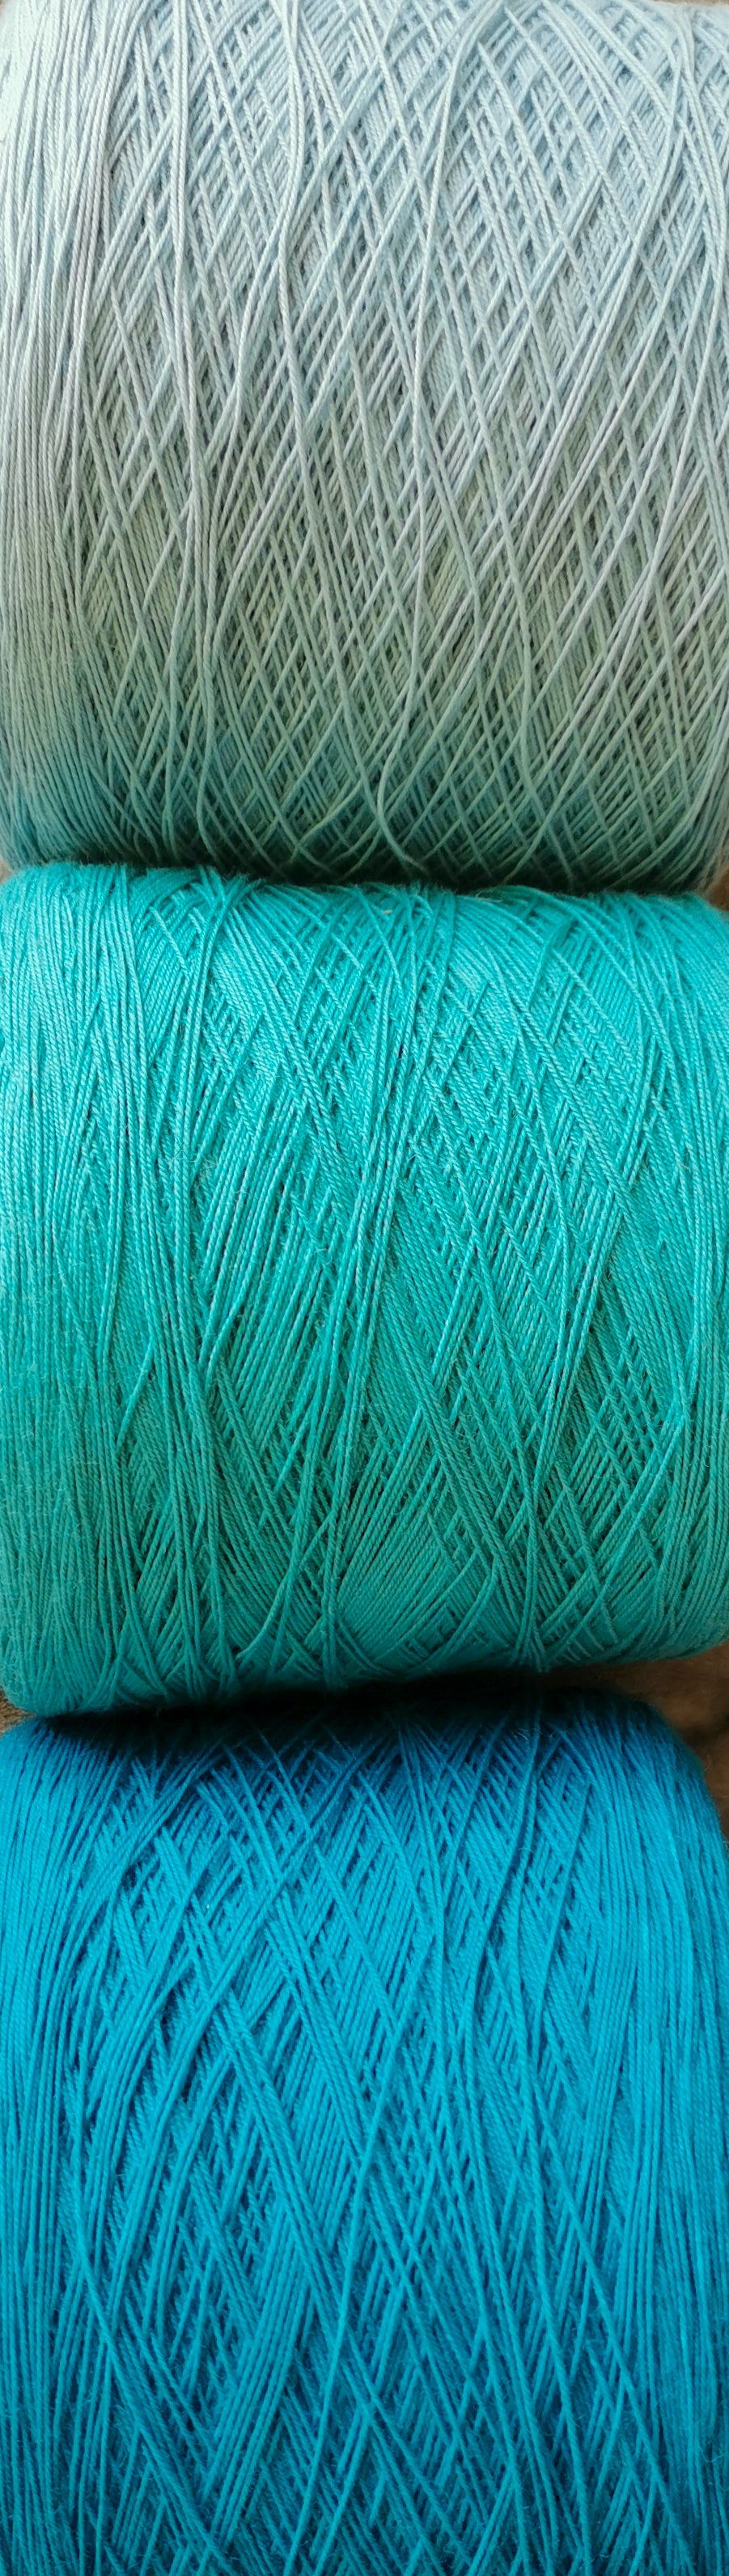 wool/nylon blend yarn in pale blue